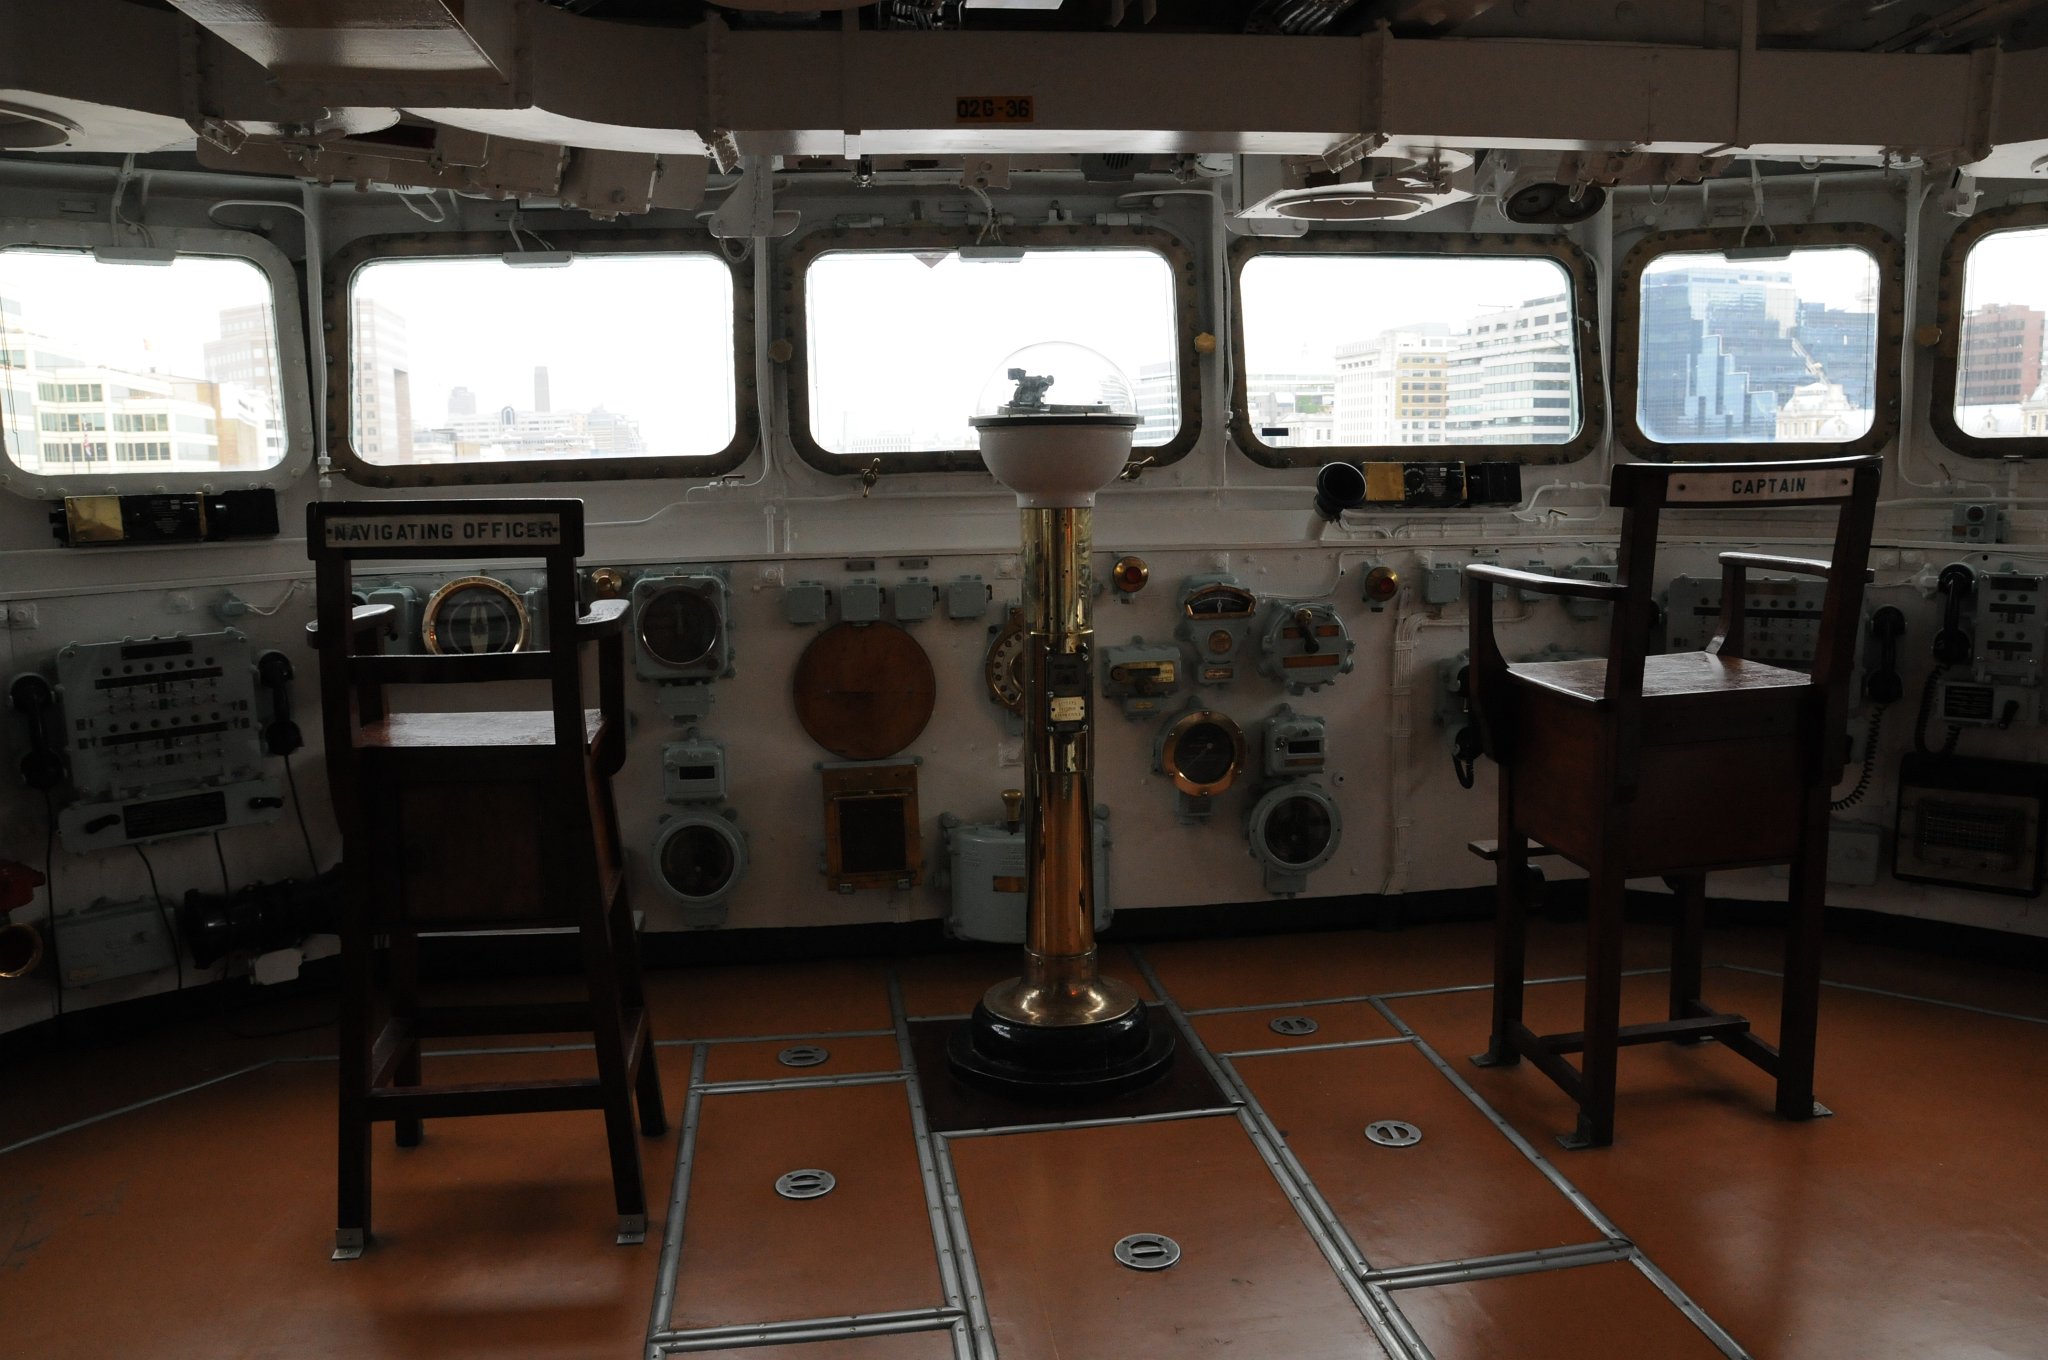 DSC_4910.JPG - Kaptiánský můstek, vlevo je sedaldlo navigačního důstojníka a vpravo pak křeslo kapitána Belfastu.